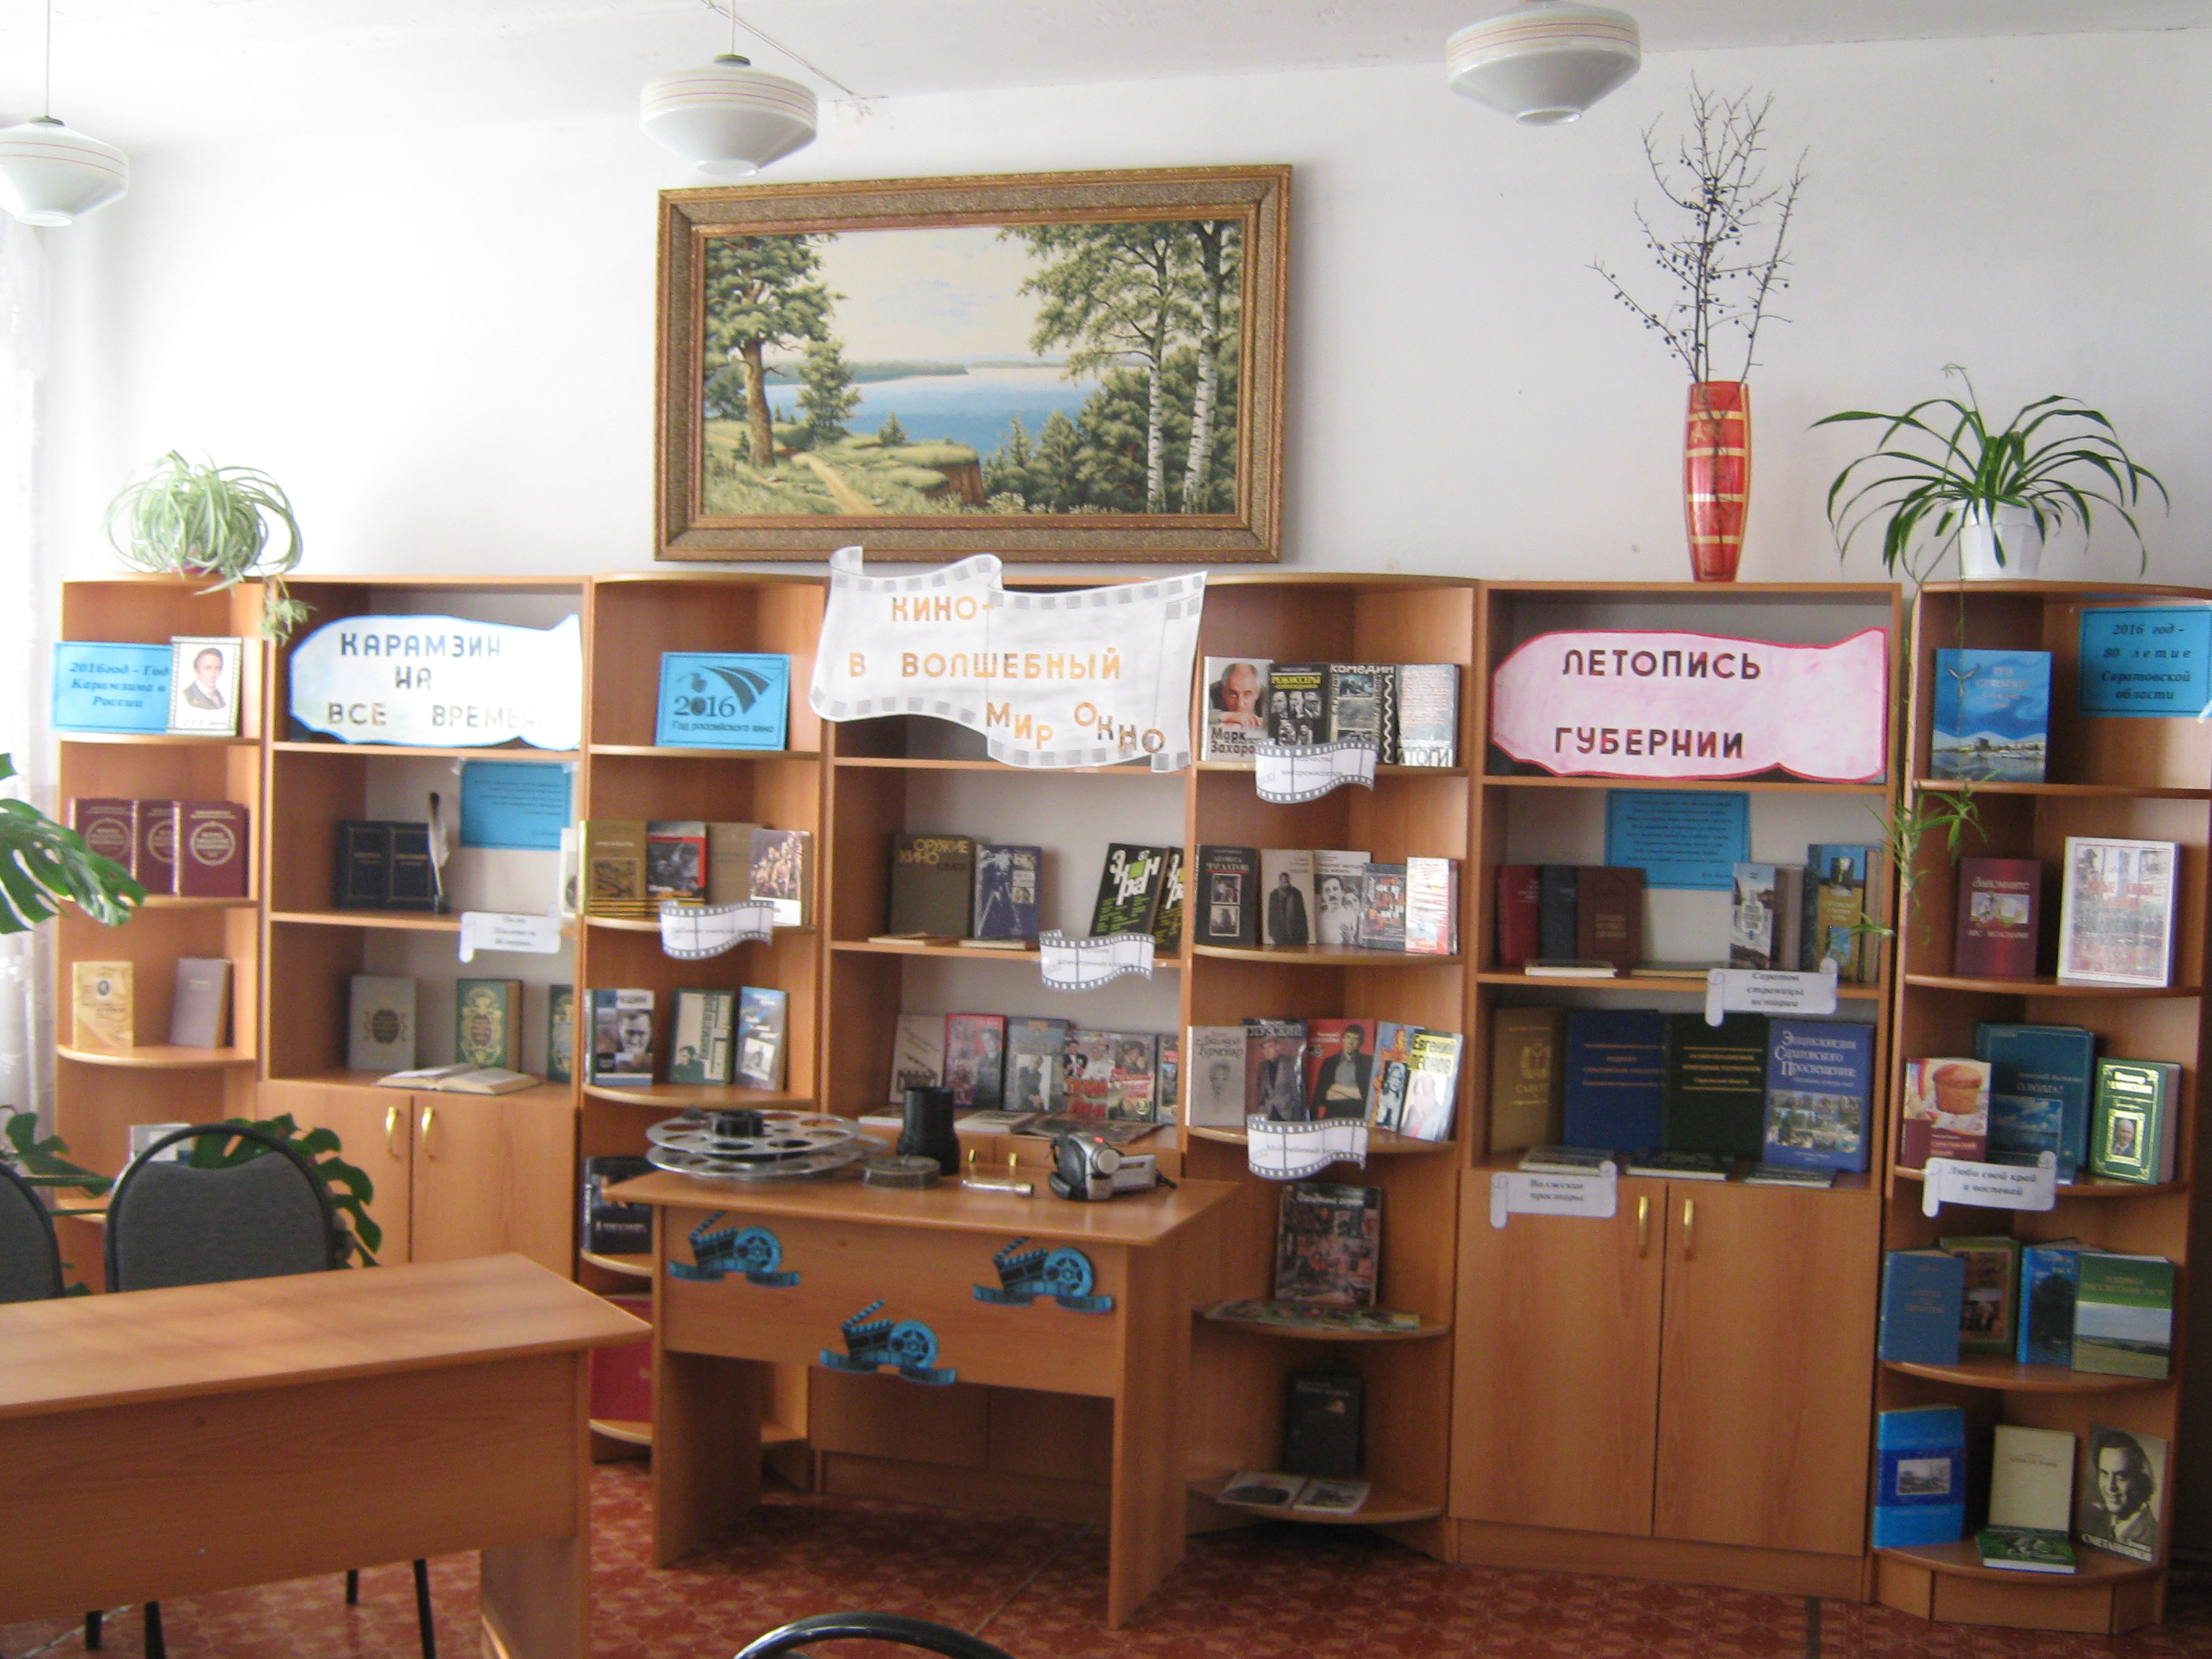 Перелюбская межпоселенческая районная библиотека